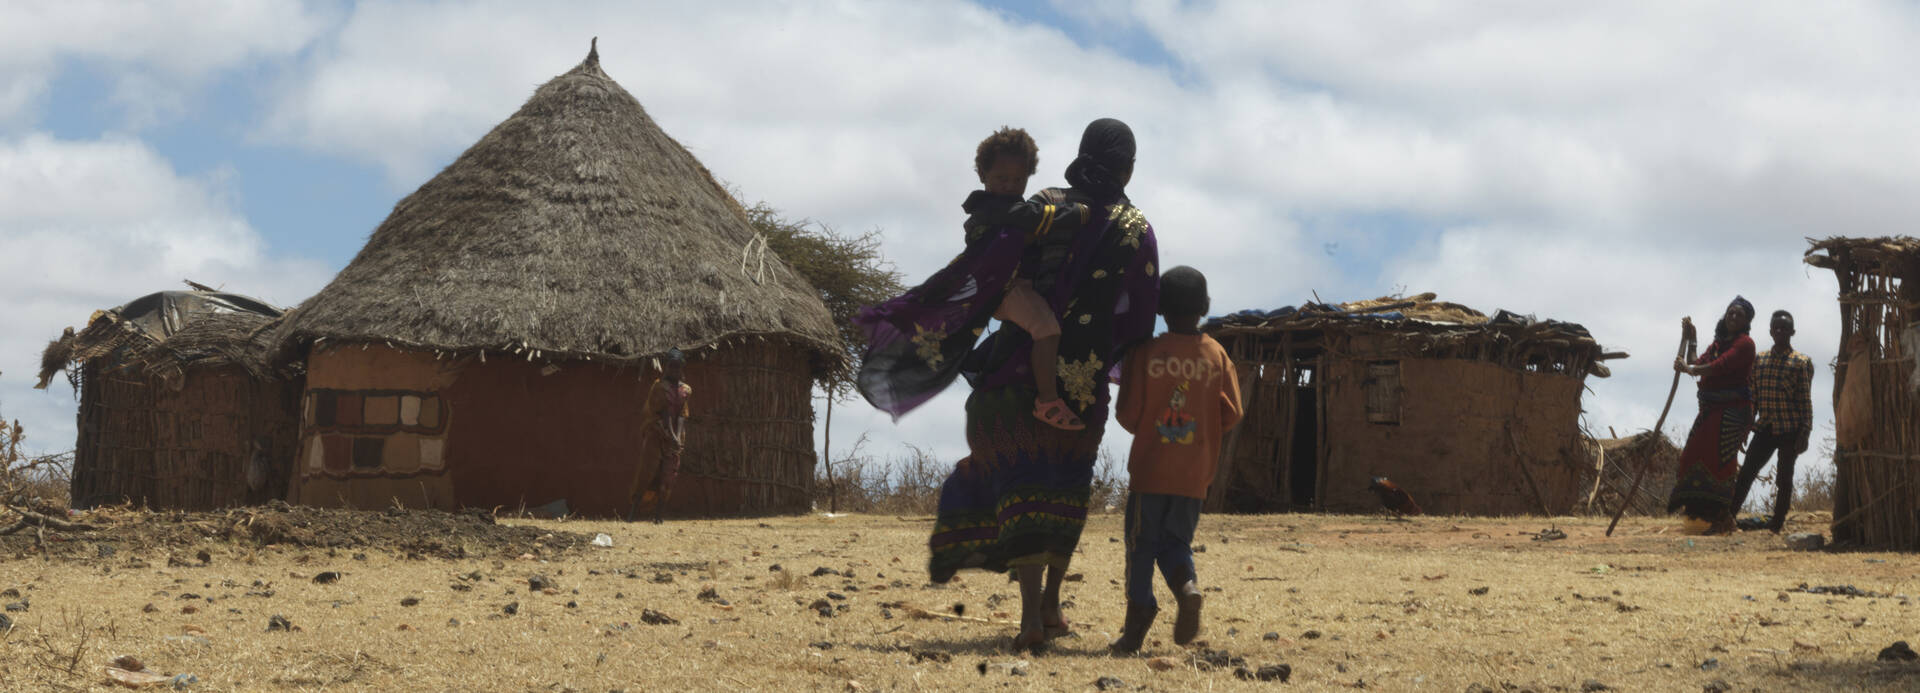 Eine Mutter läuft mit ihren Kindern durch die karge Landschaft Äthiopiens in ihr Dorf, im Hintergrund stehen zwei weitere Personen neben Hütten